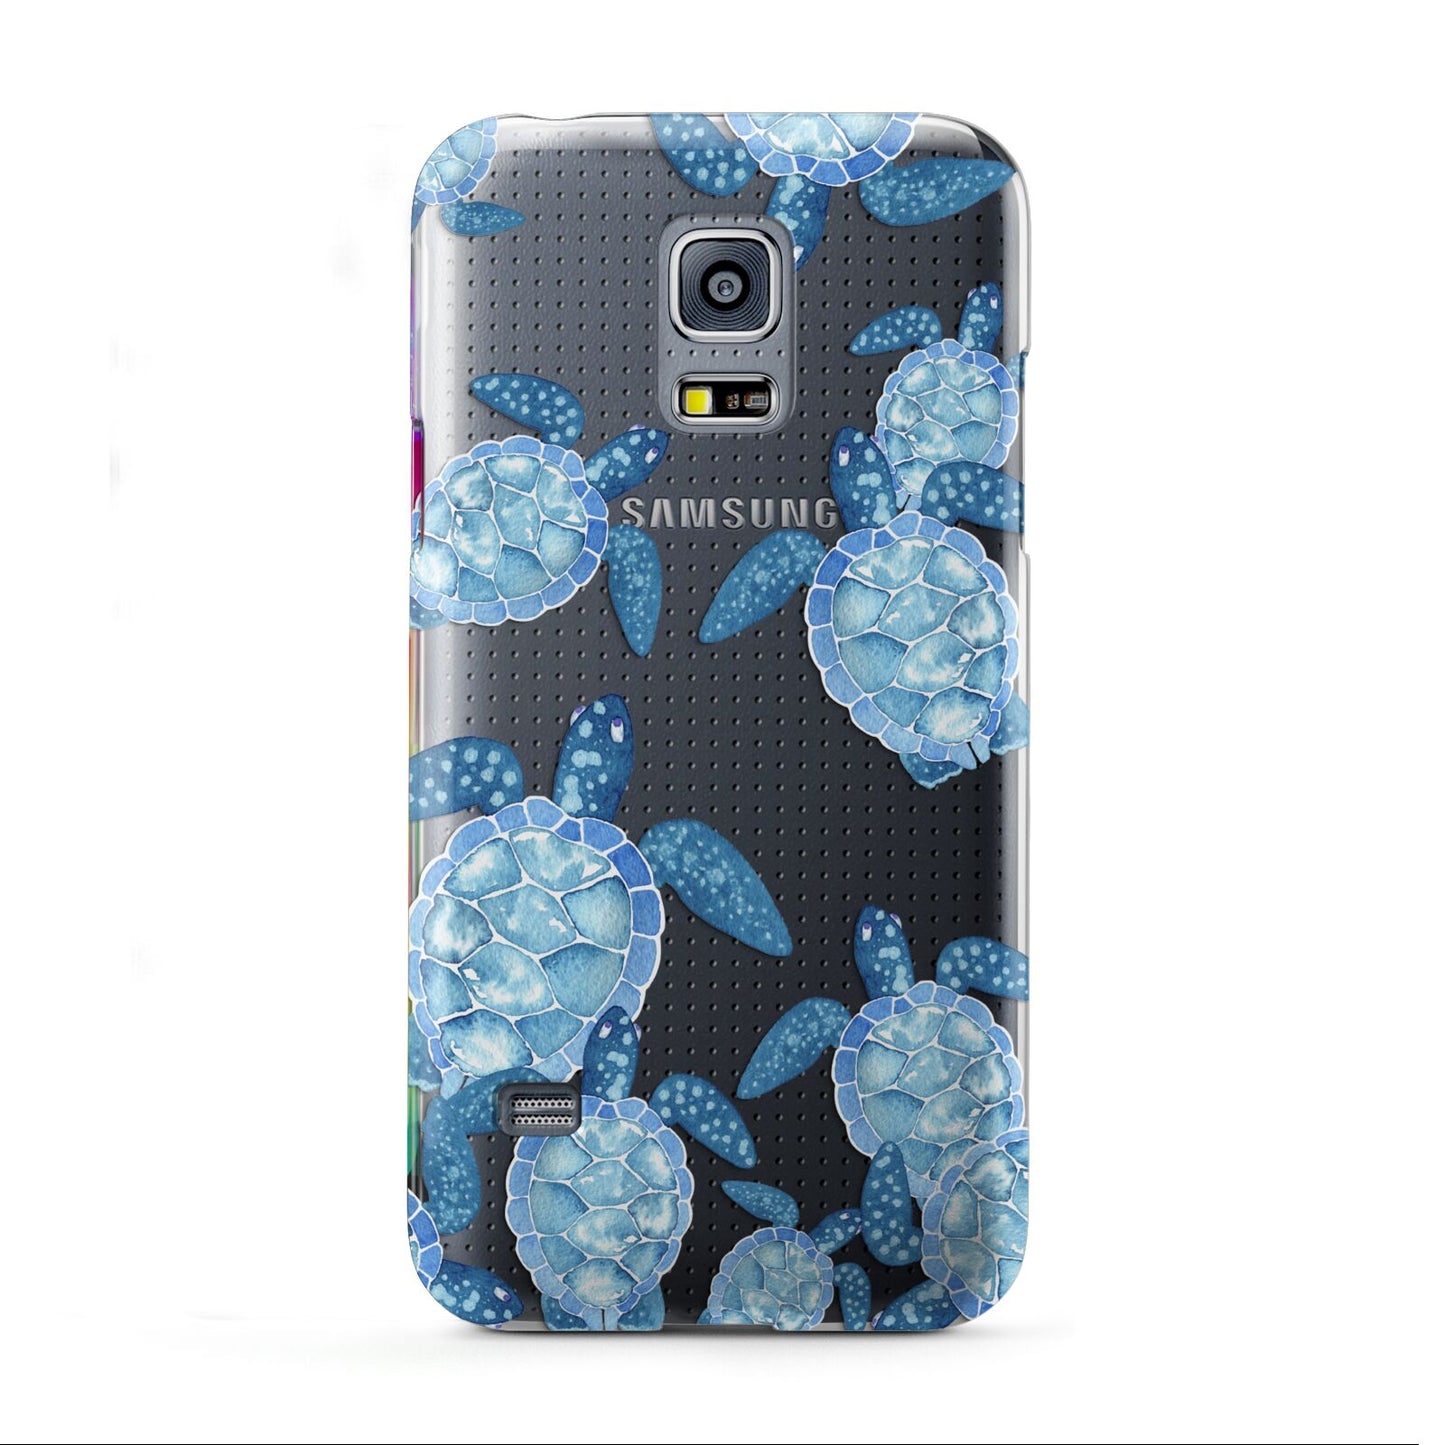 Turtle Samsung Galaxy S5 Mini Case